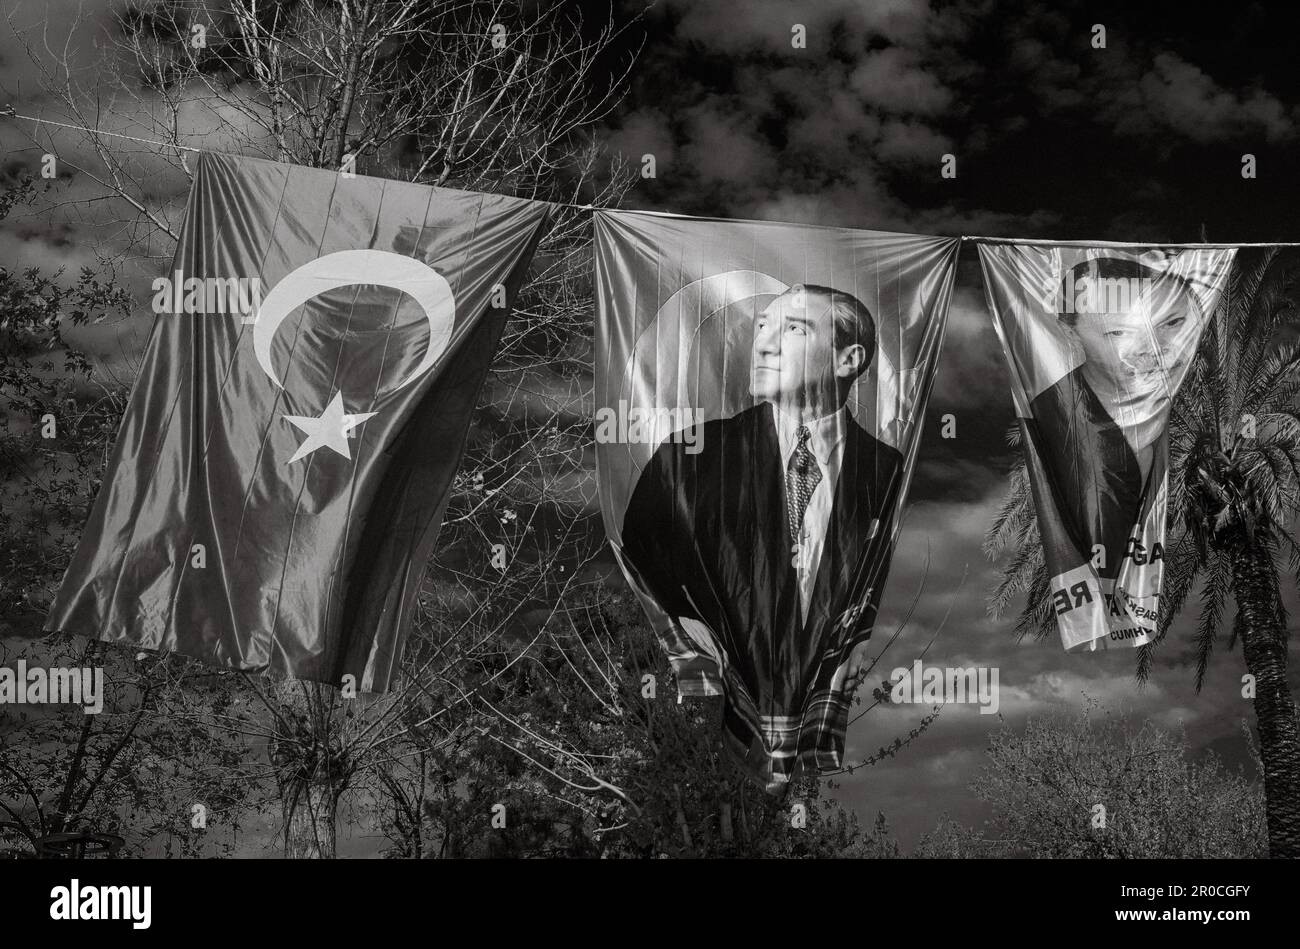 L'esposizione di bandiere e bandiere che volano in alto su una corda contro un cielo blu ad Antalya, Turchia, mostra l'identità politica e nazionale del paese. Foto Stock